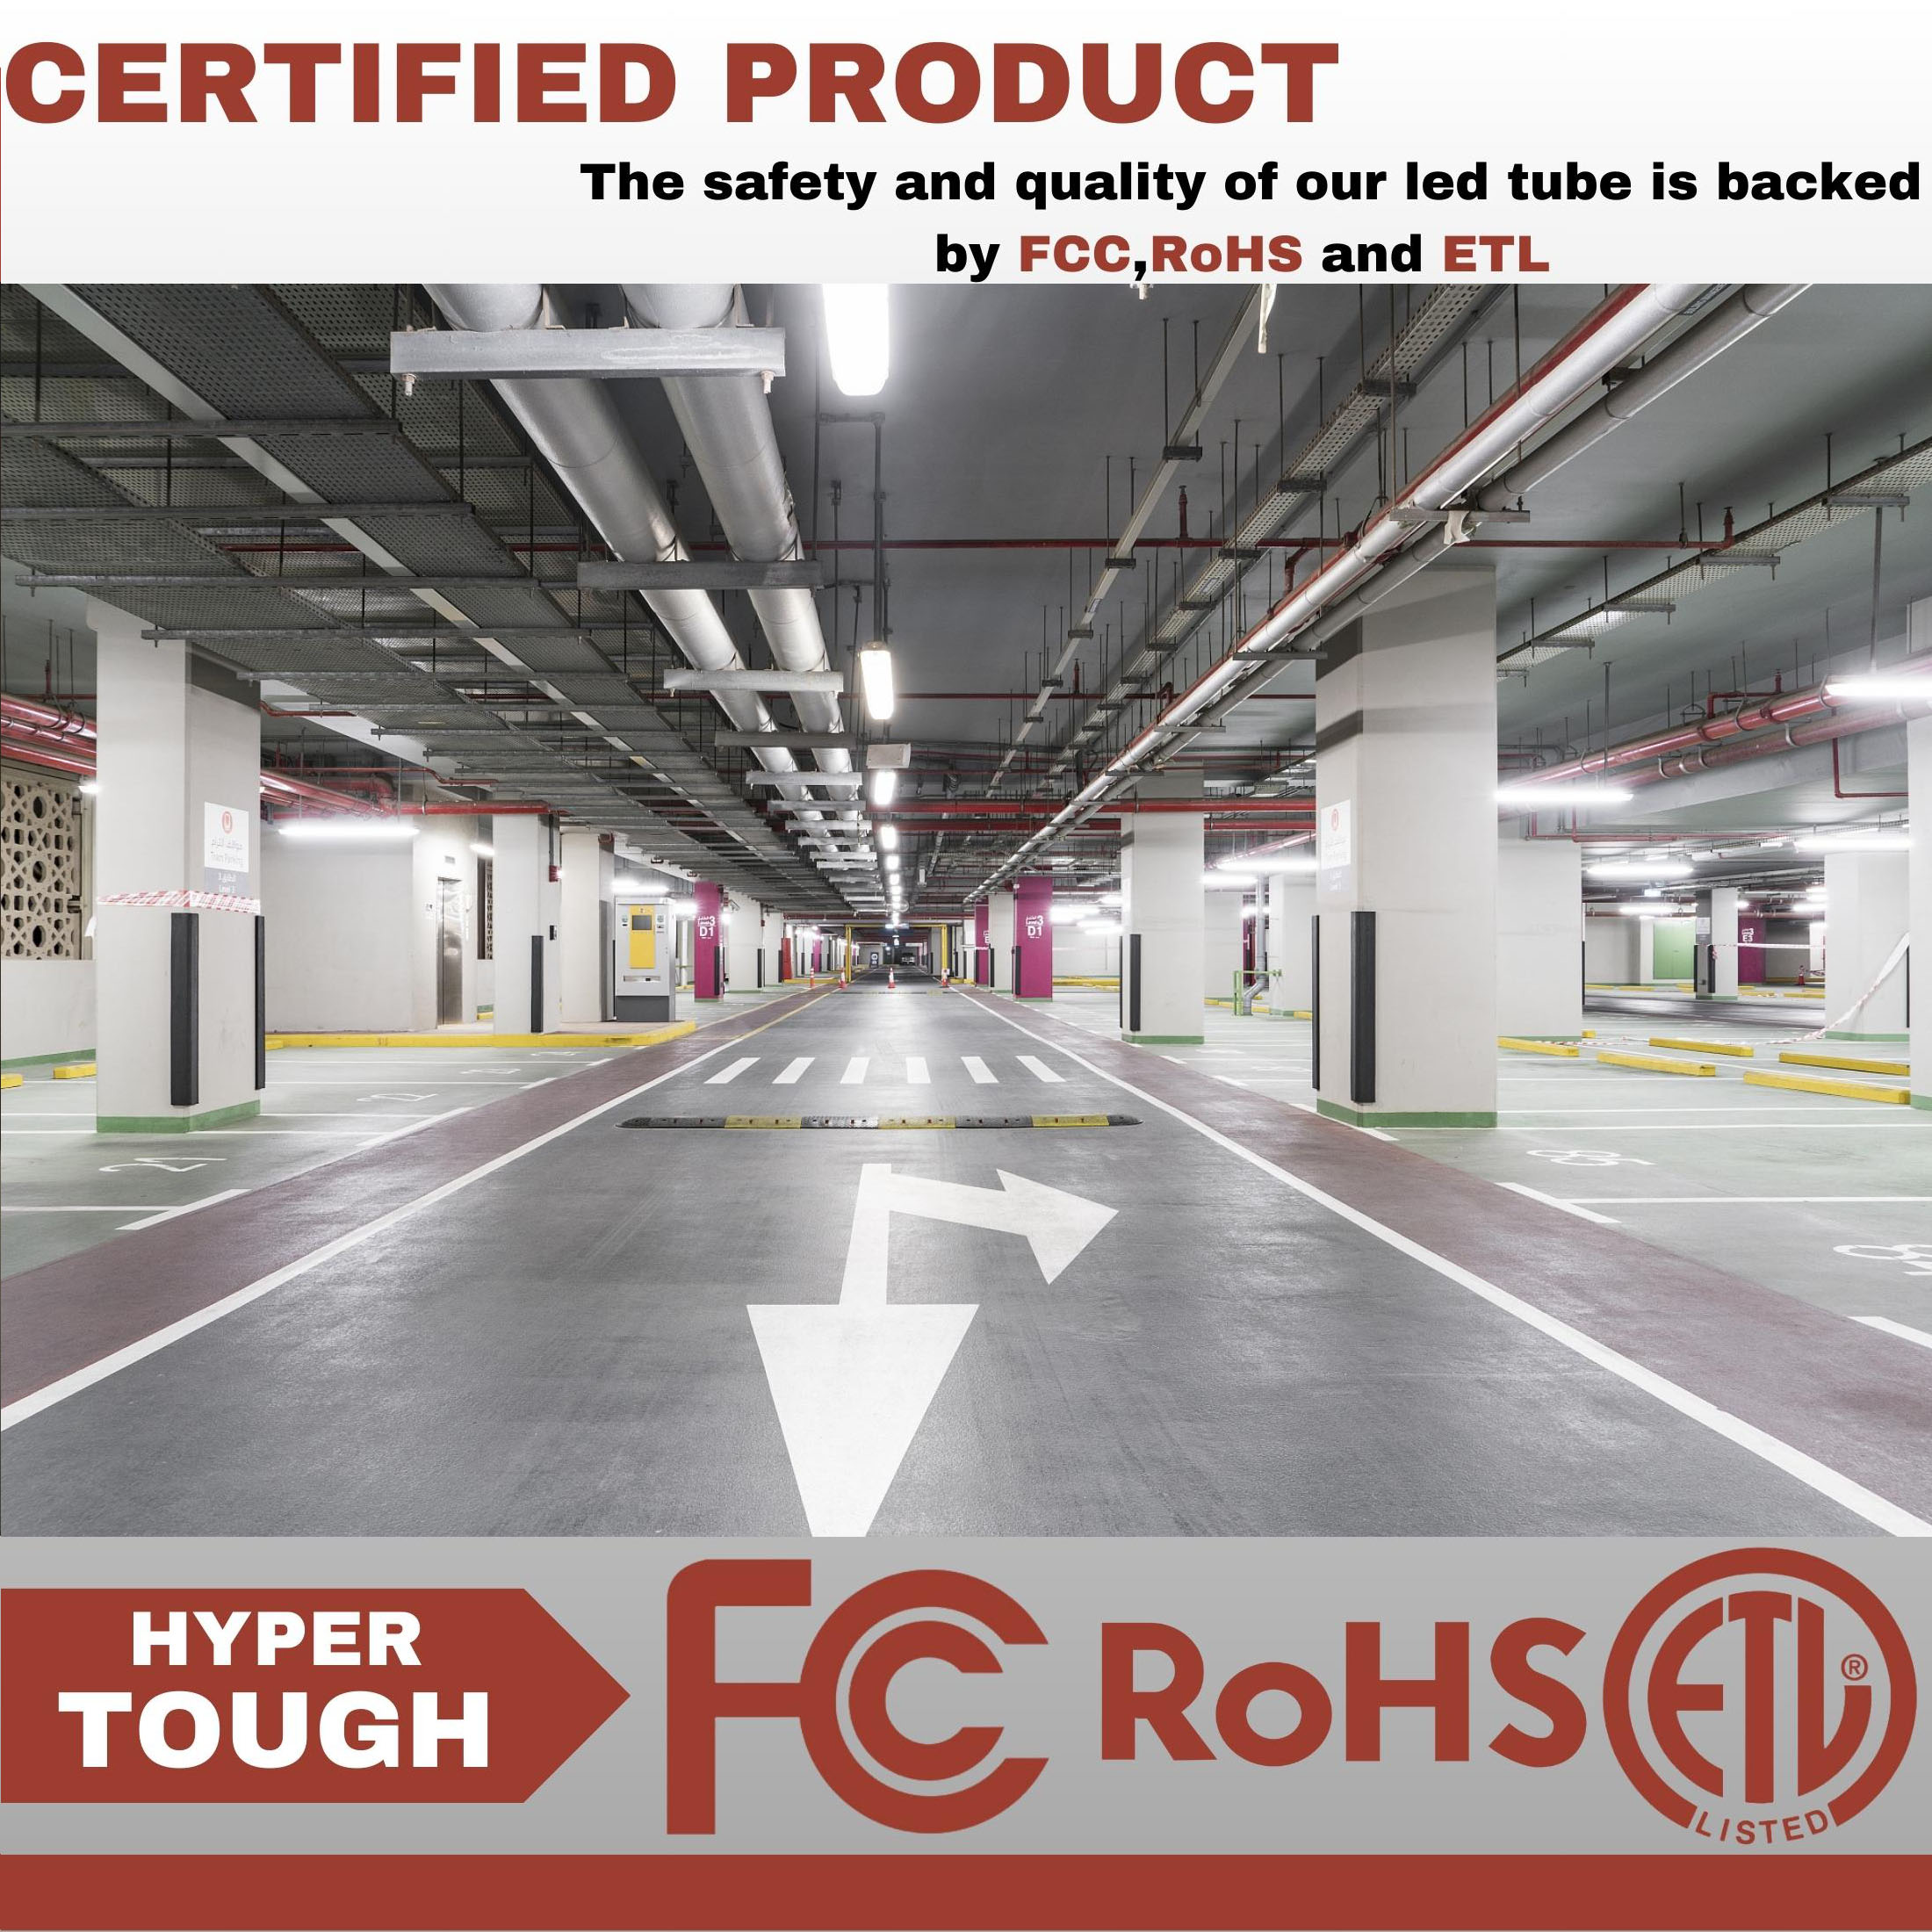 Hyper Tough 3-FT 4500-Lumen Integrated LED Shop Light, Slim Design, Linkable and Motion Sensor, 1PK - image 3 of 10